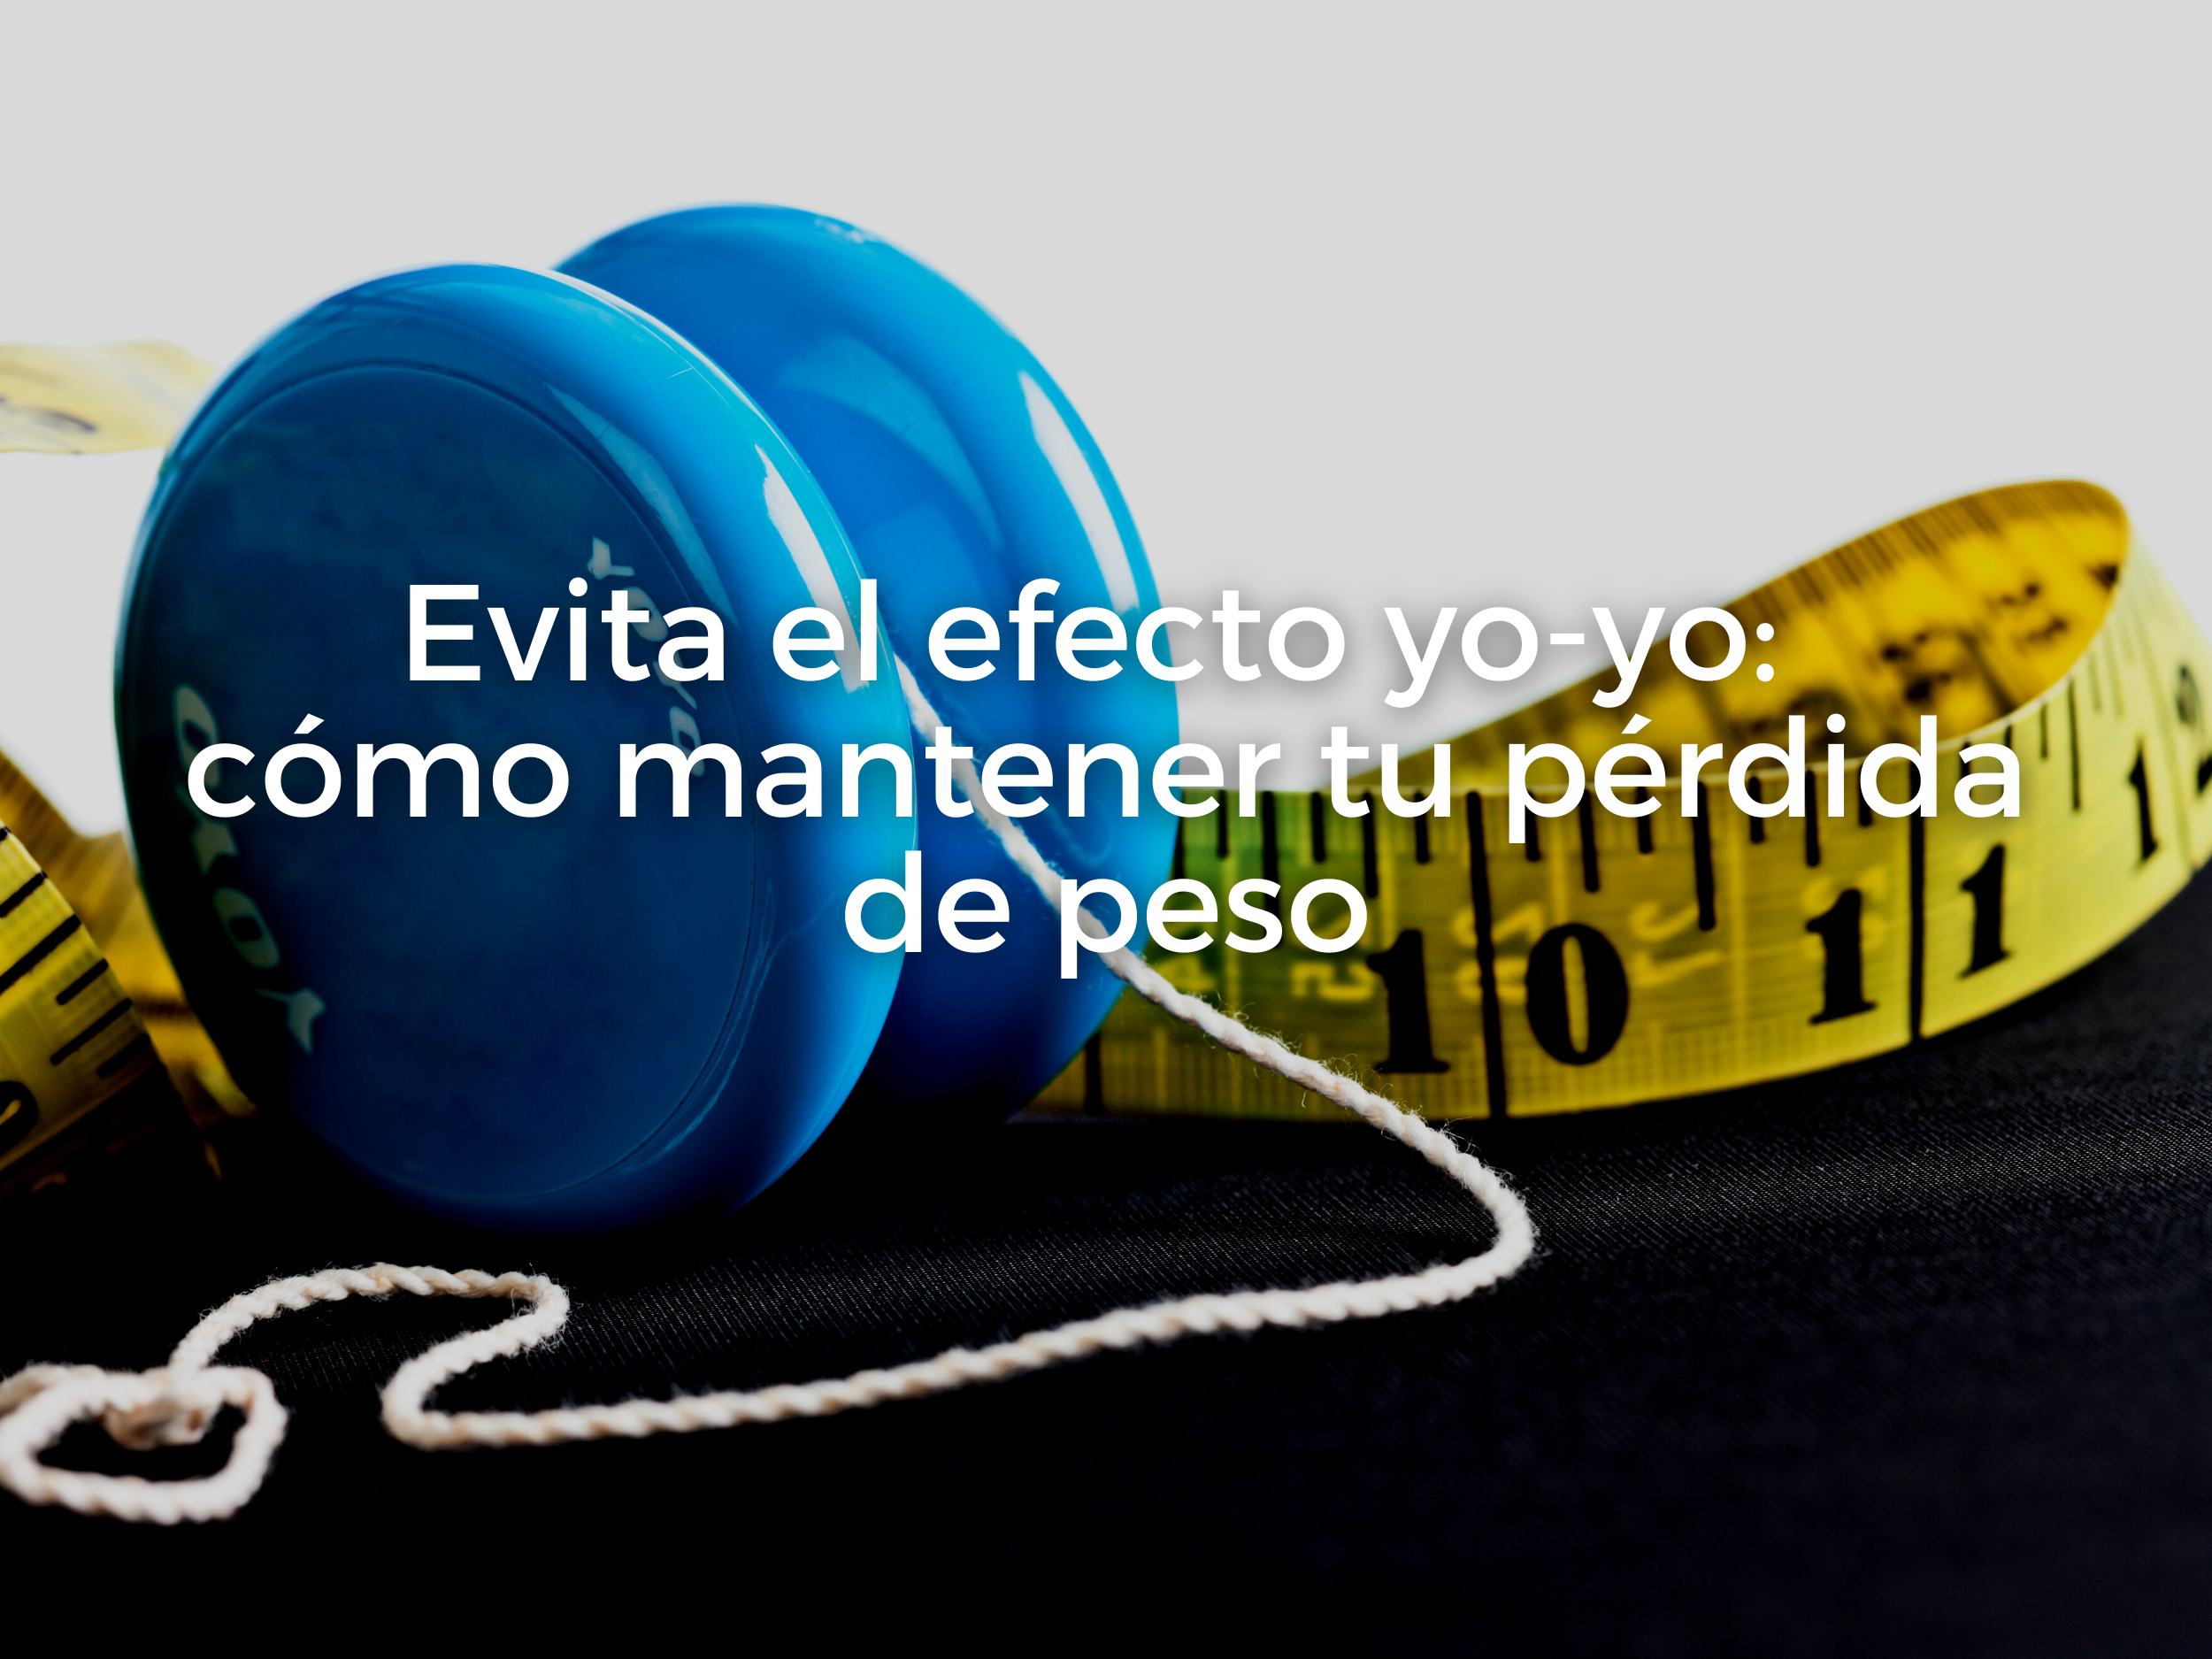 Evita el efecto yo-yo: cómo mantener tu pérdida de peso